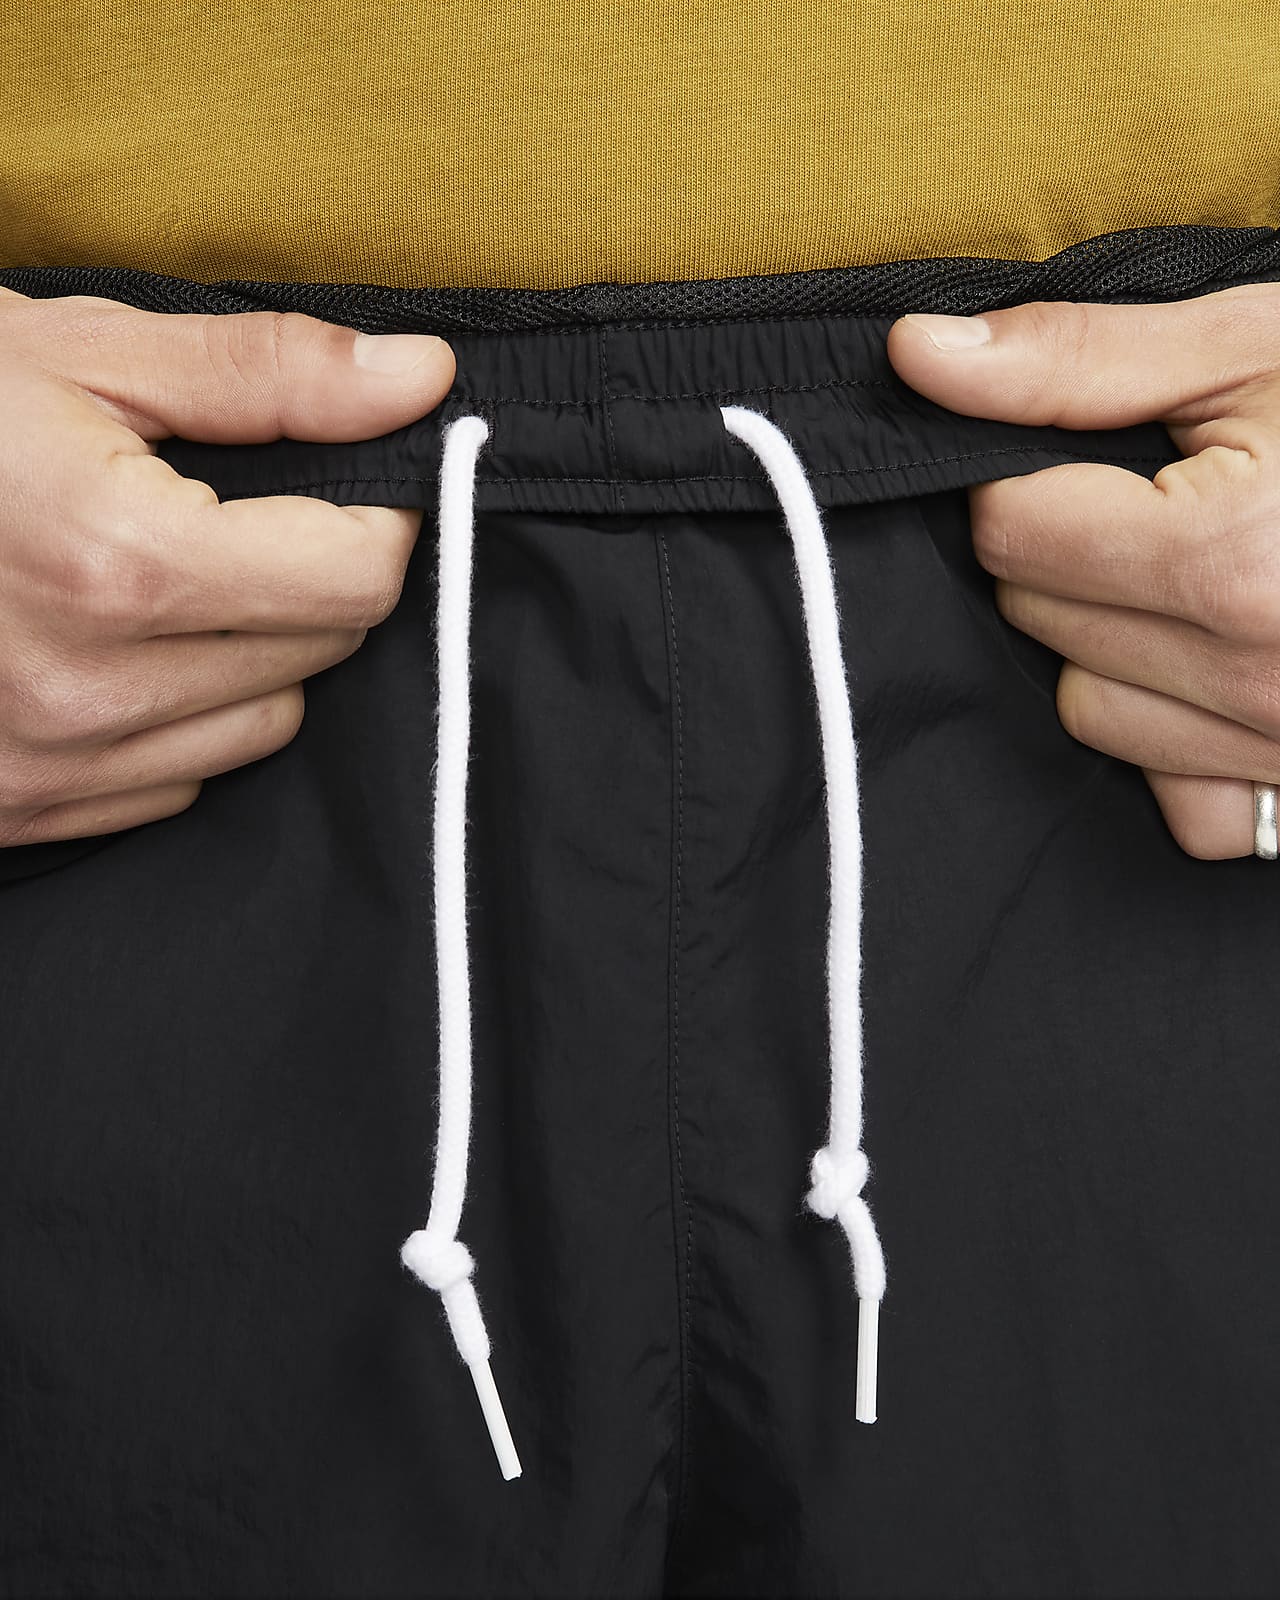 Nike Tech Fleece Reimagined Tracksuit Trousers in Black for Men